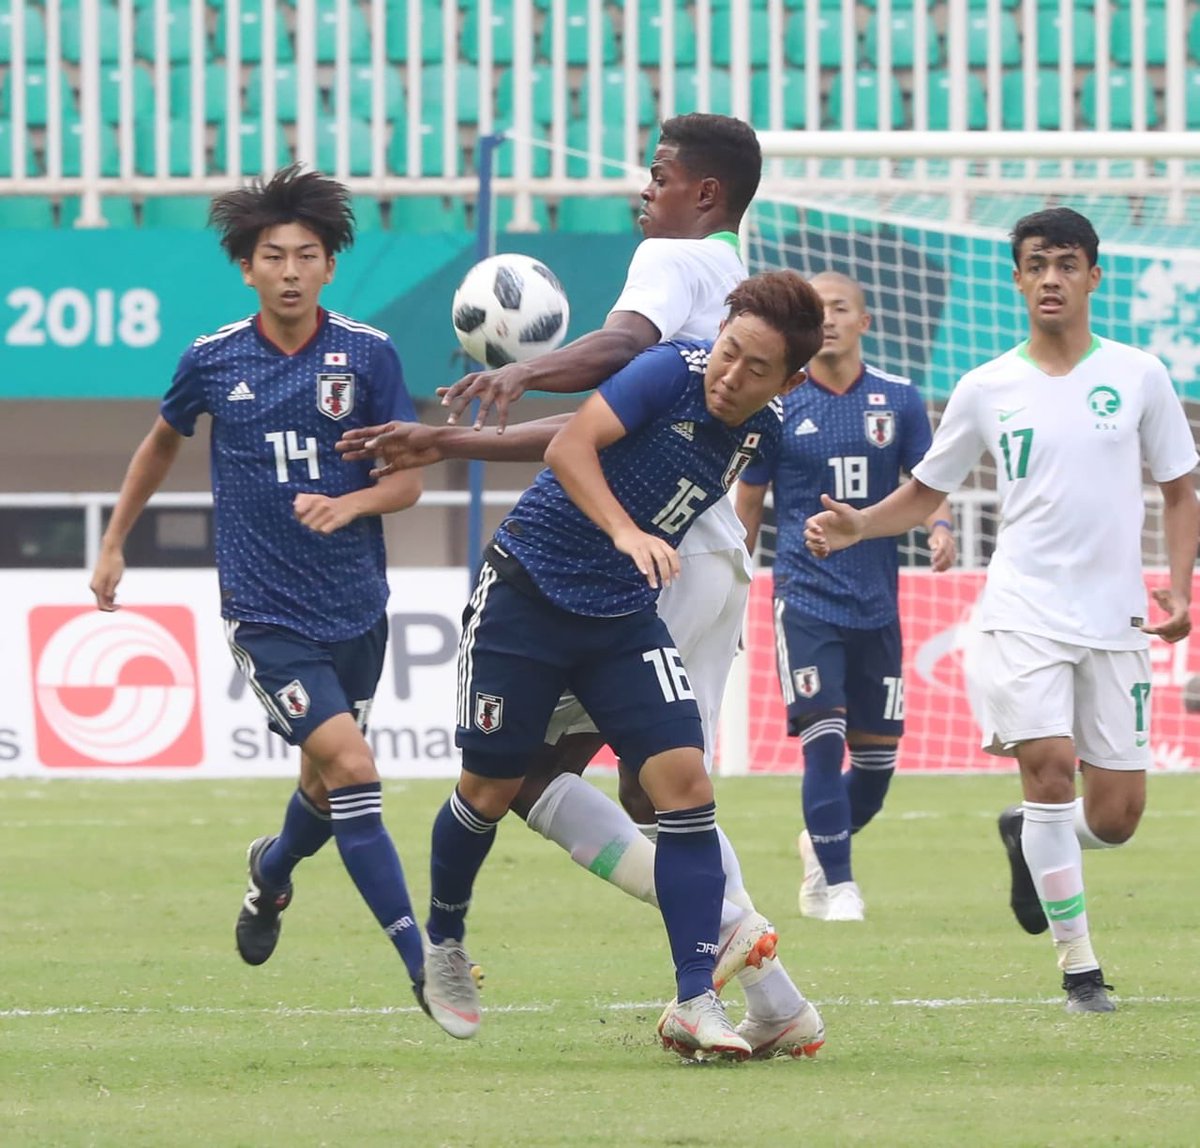 السعودية تودع الألعاب الآسيوية بعد الخسارة أمام اليابان